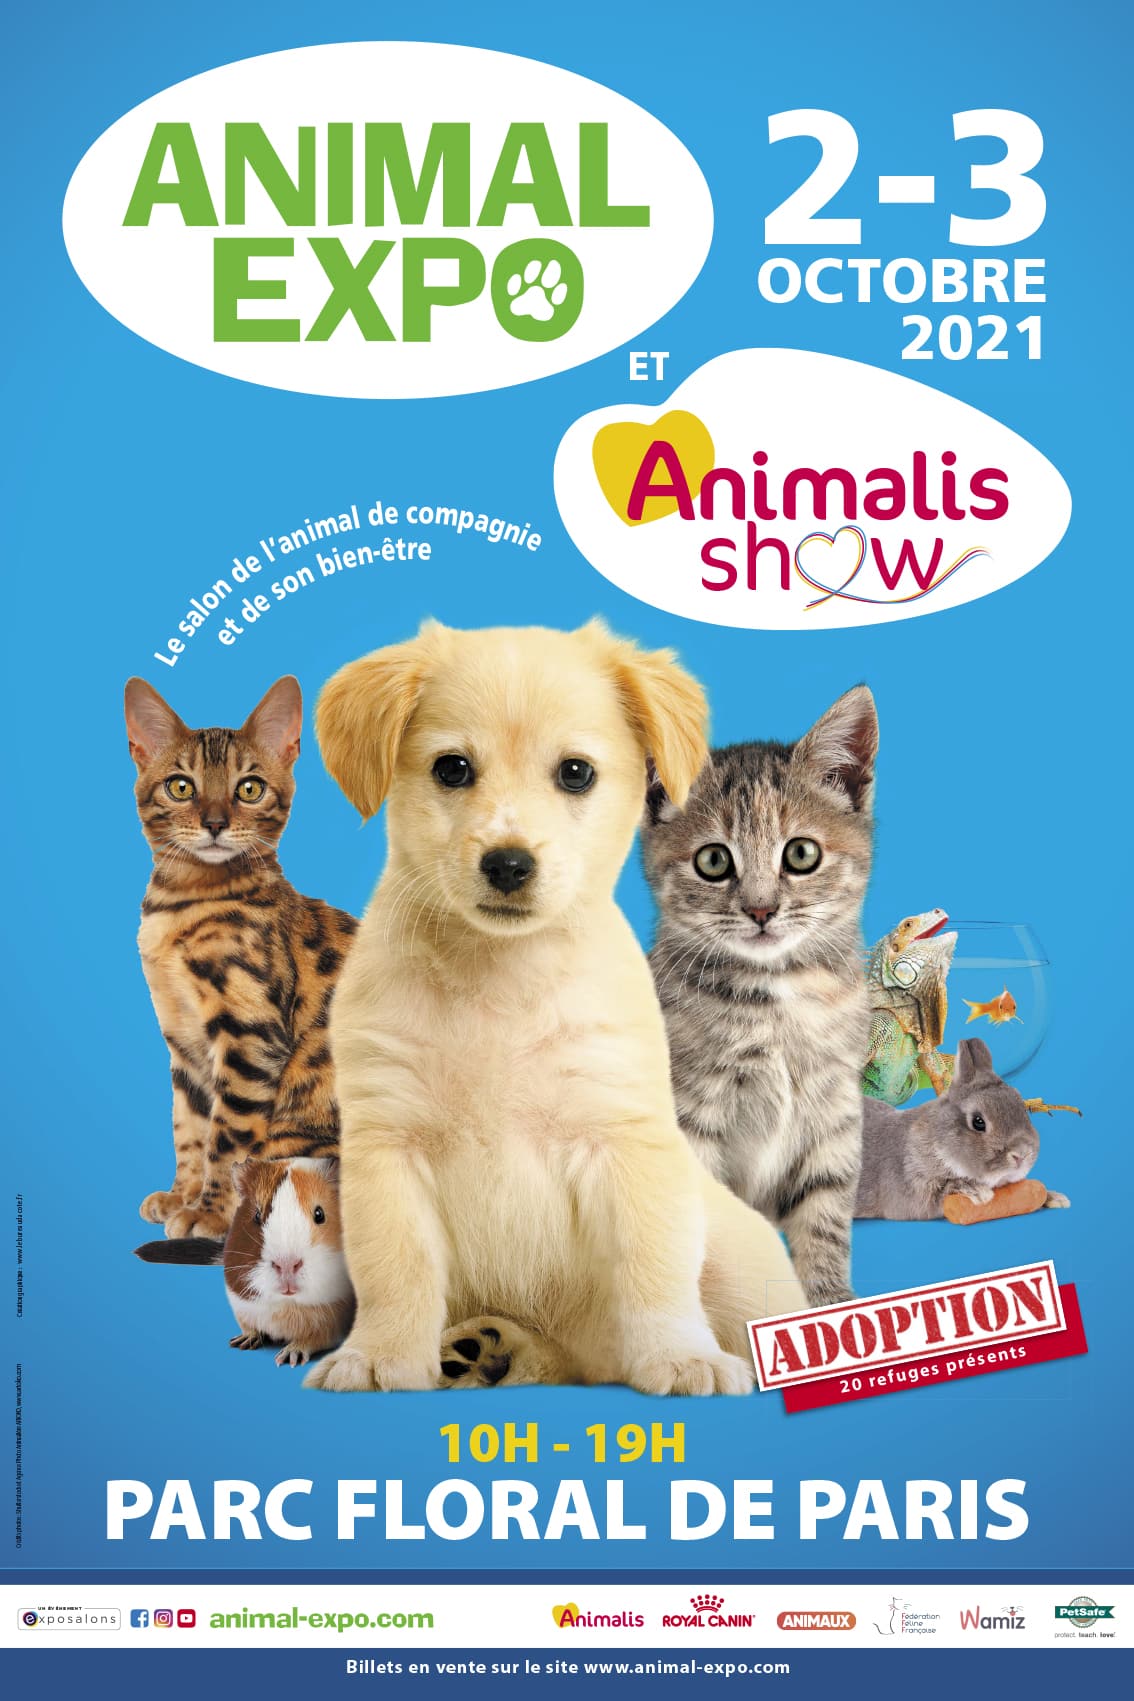 Animal Expo – Animalis Show  – Le salon de l’animal de compagnie et de son bien-être depuis 30 ans